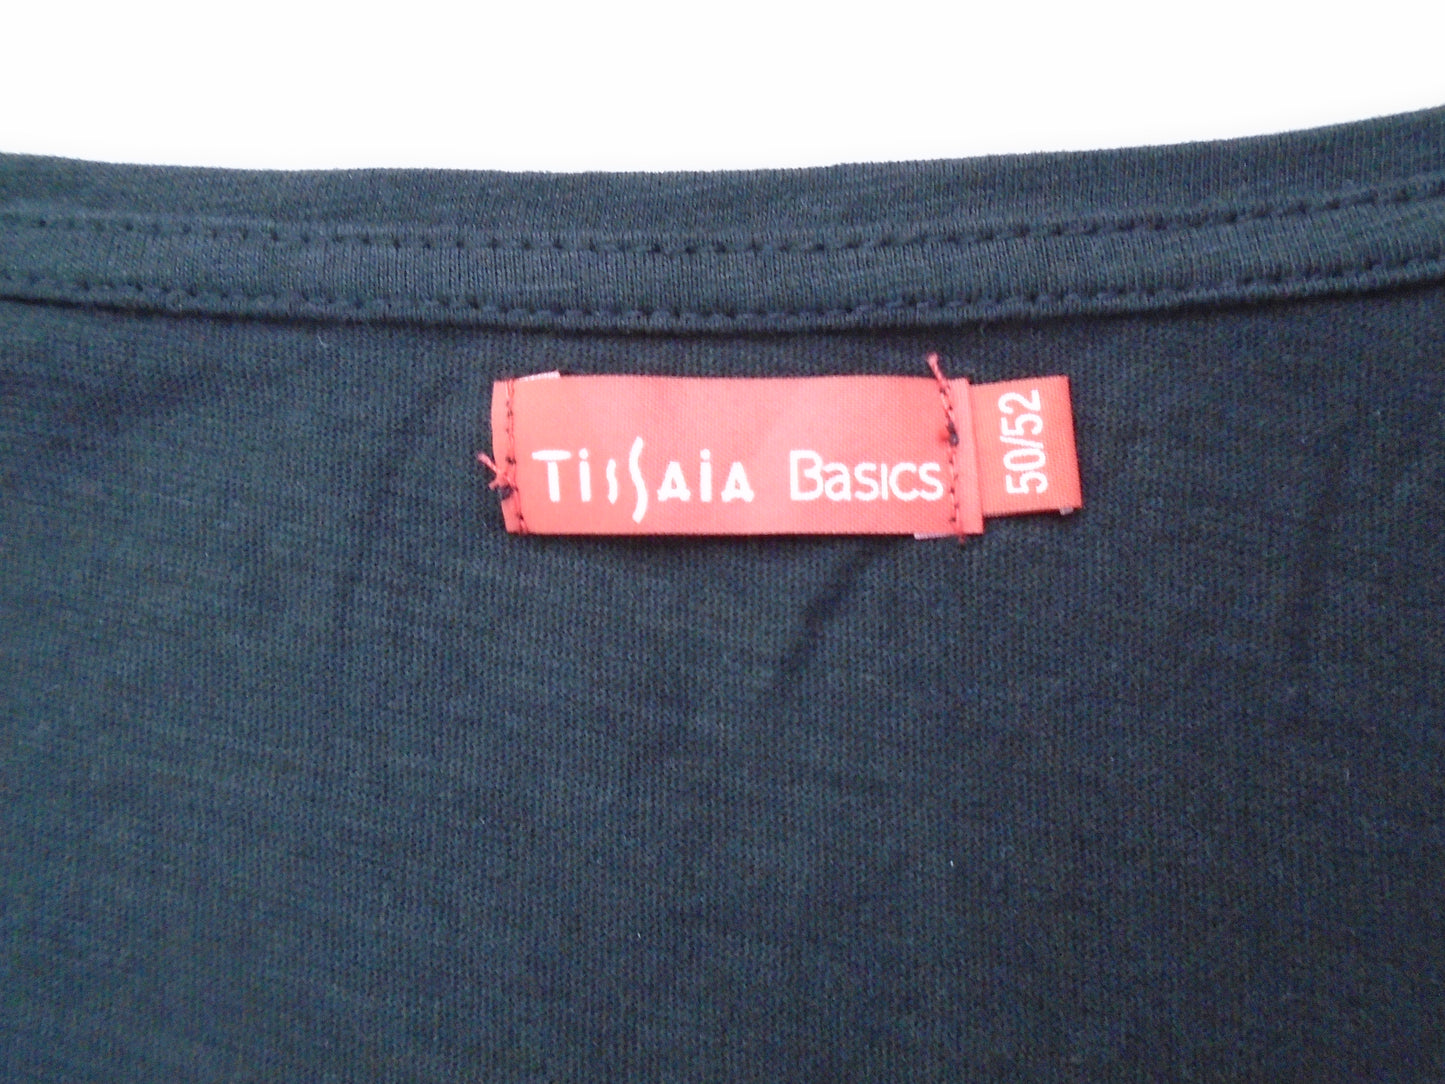 Herren T-Shirt Tissaia. Farbe schwarz. Größe: L. Zustand: Gebraucht.(Sehr guter Zustand). | 11920775